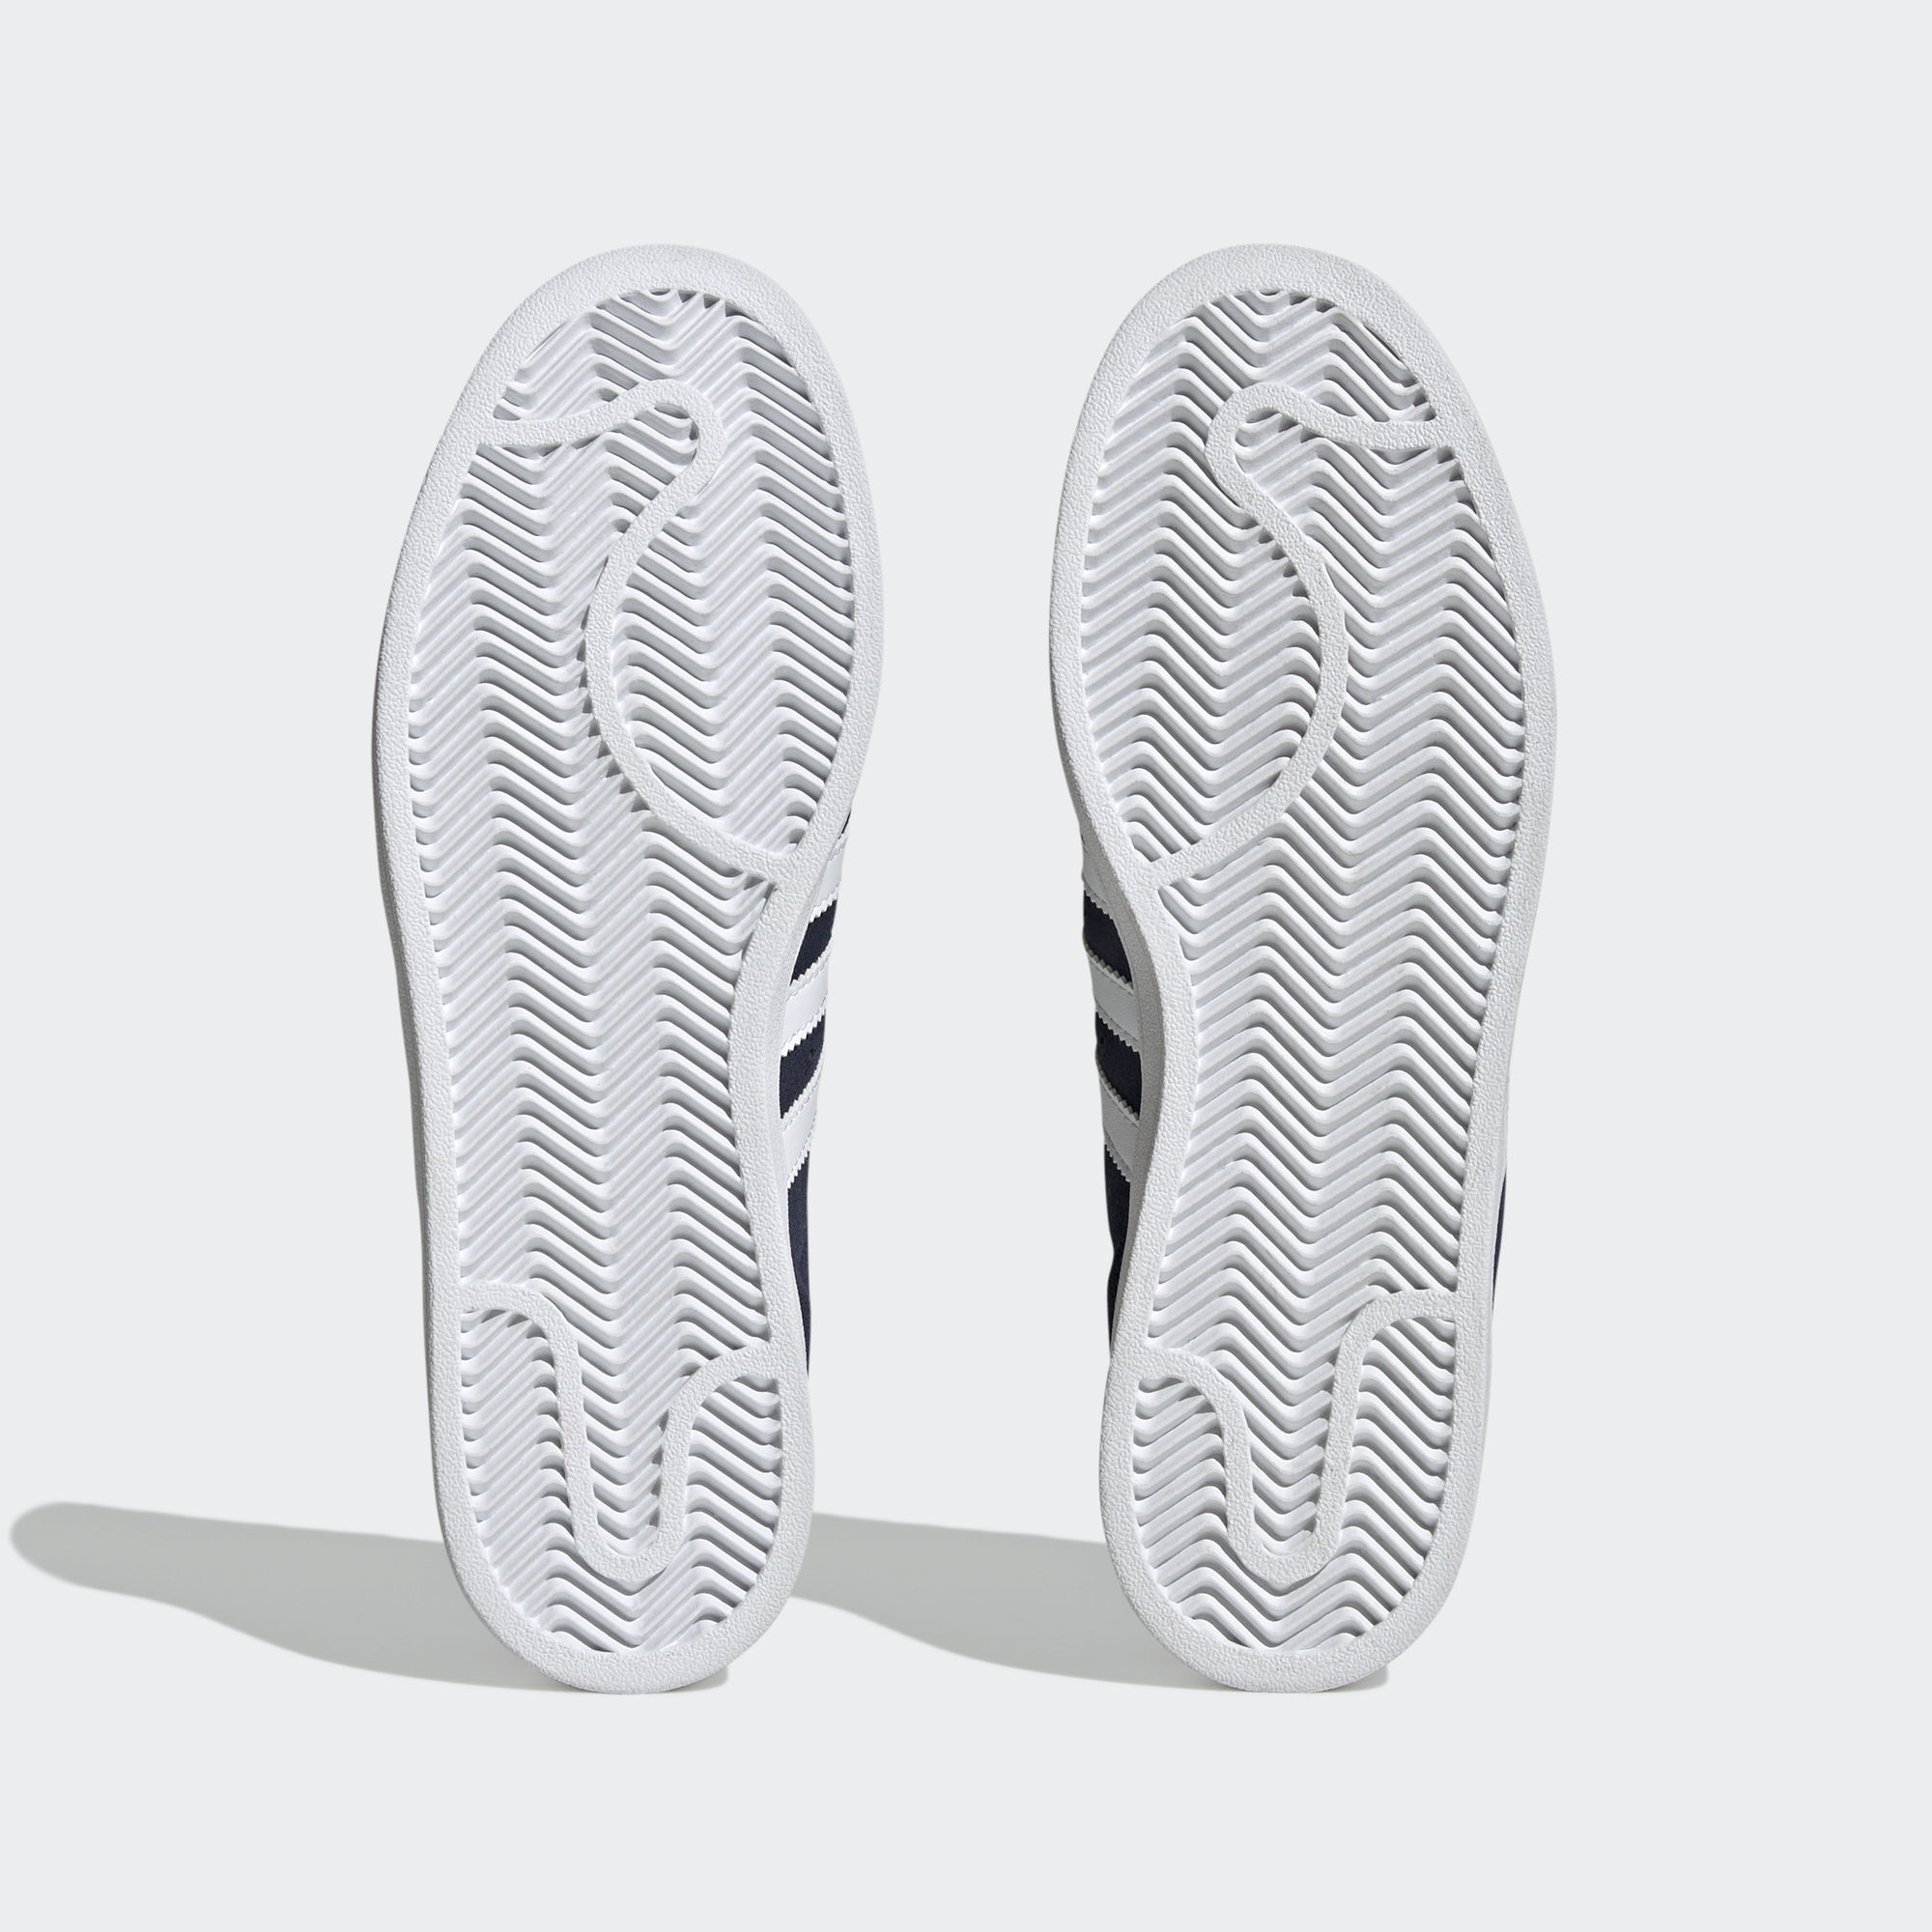 CAMPUS 2.0 運動鞋- 深藍色| 男子| adidas(愛迪達)香港官方網上商店